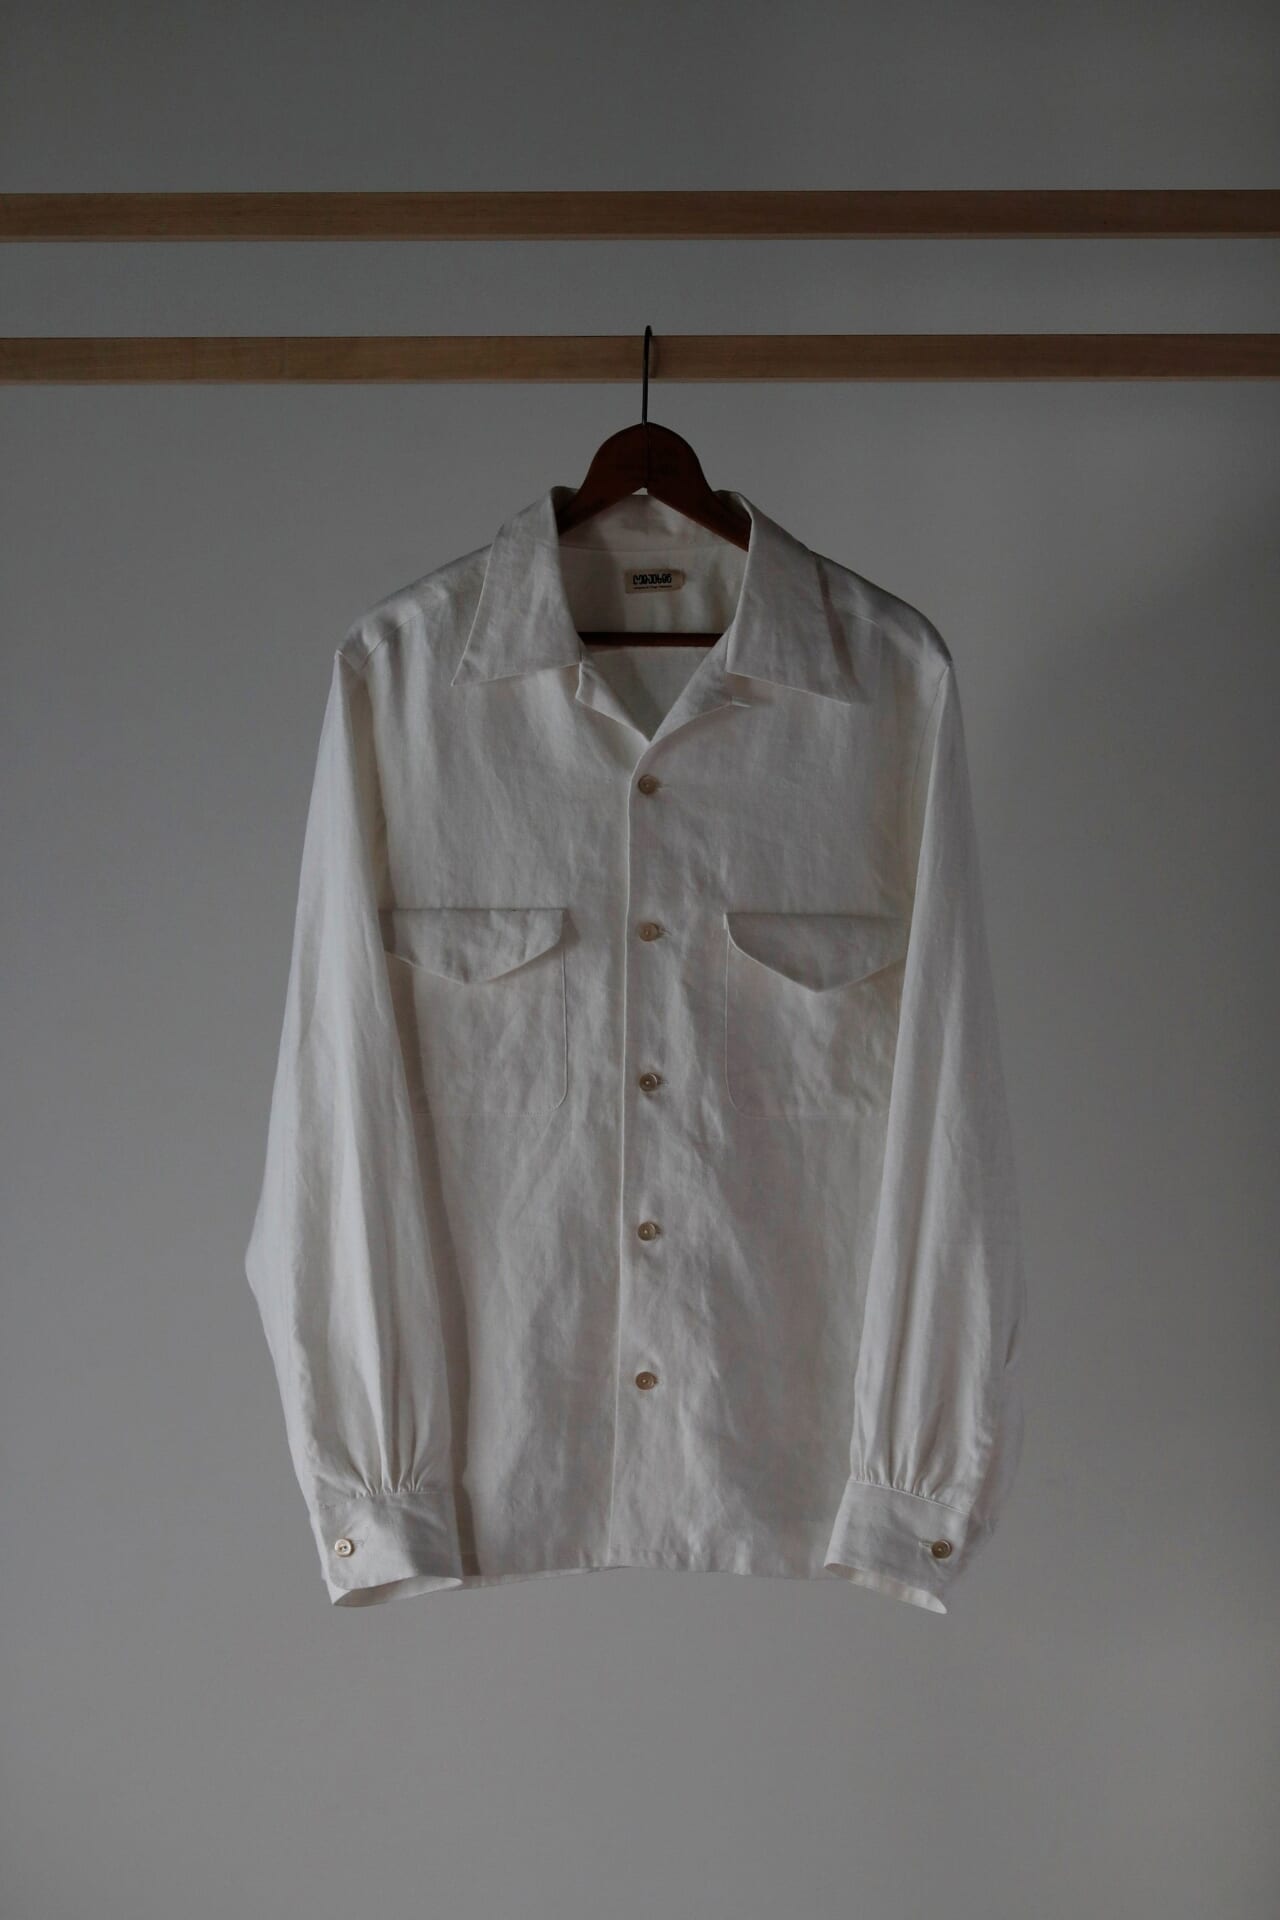 1950年代アメリカ製のオープンカラーシャツをベースに、身頃やパッチポケット、貝ボタンによって当時の仕様を再現。Lot.101 Open Collar Shirt 　49,500円